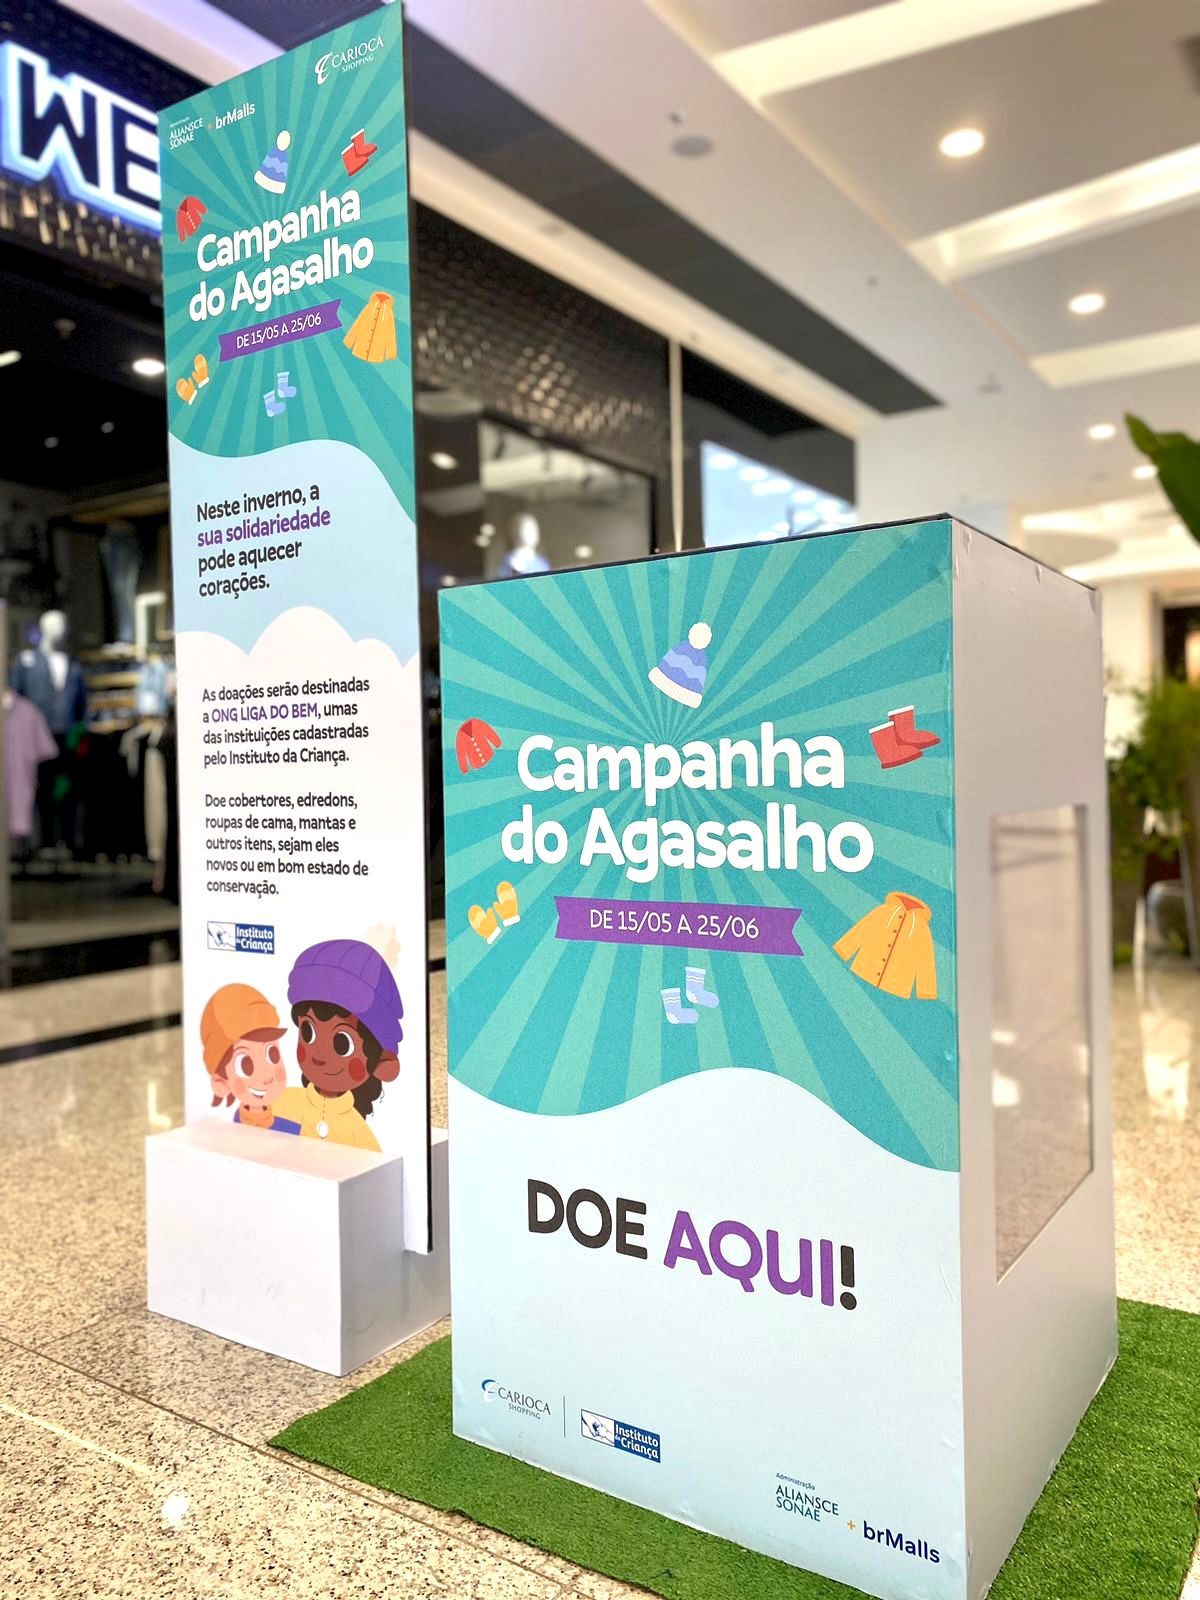 Carioca Shopping promove Campanha do Agasalho